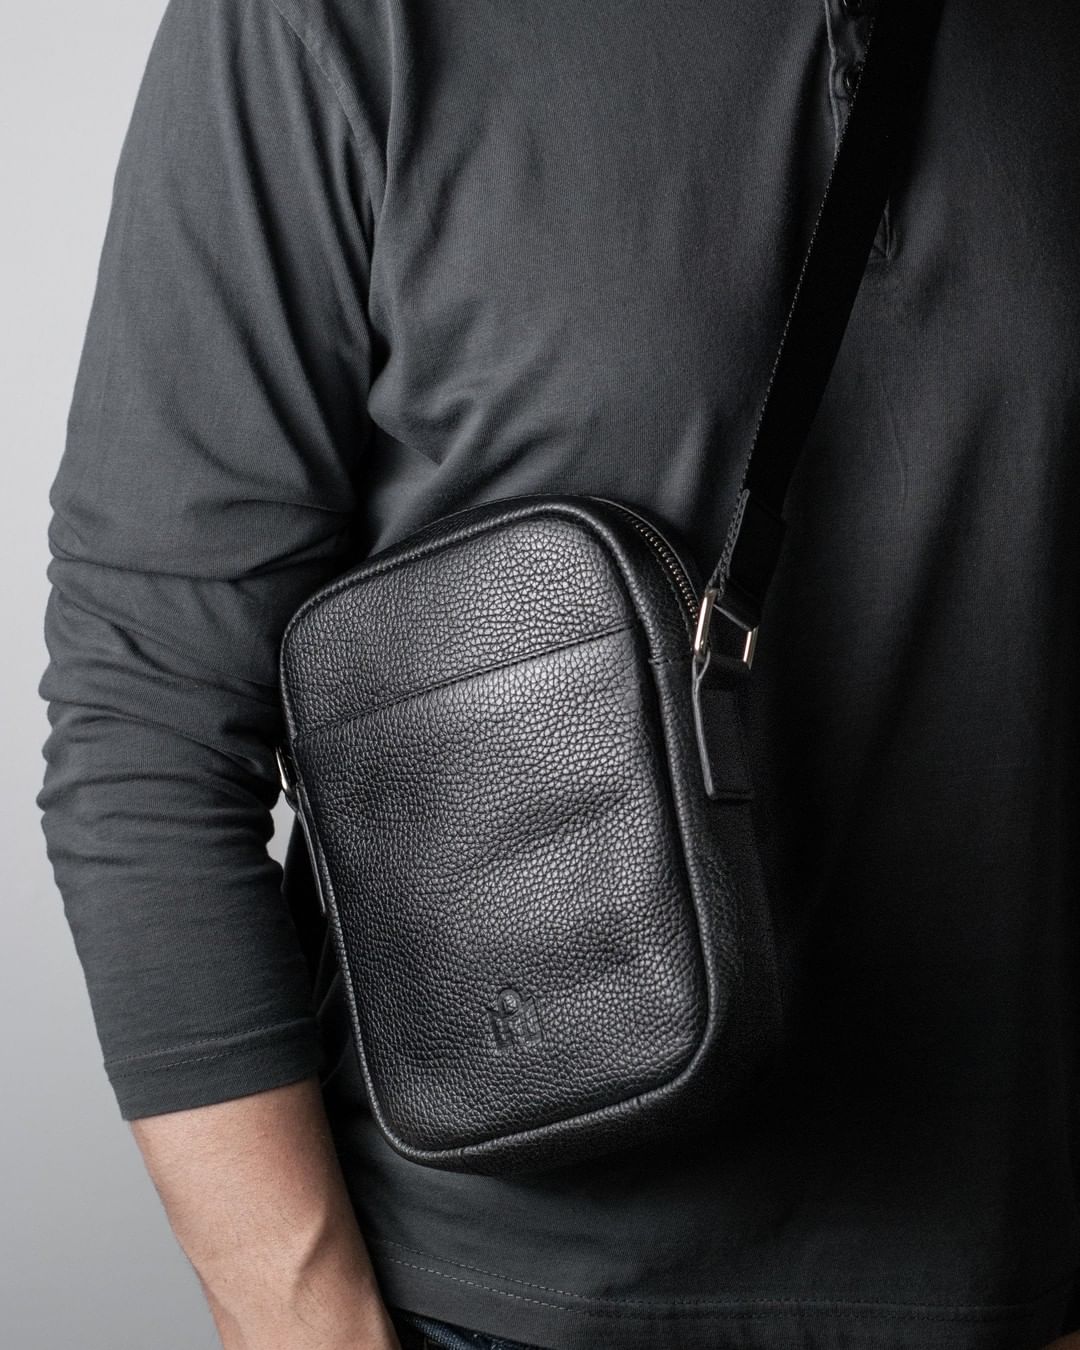 Men's Shoulder Bag| Men's Sling Bags|side bag for men - shoulder bag for men -men's crossbody bag - Aliexpress